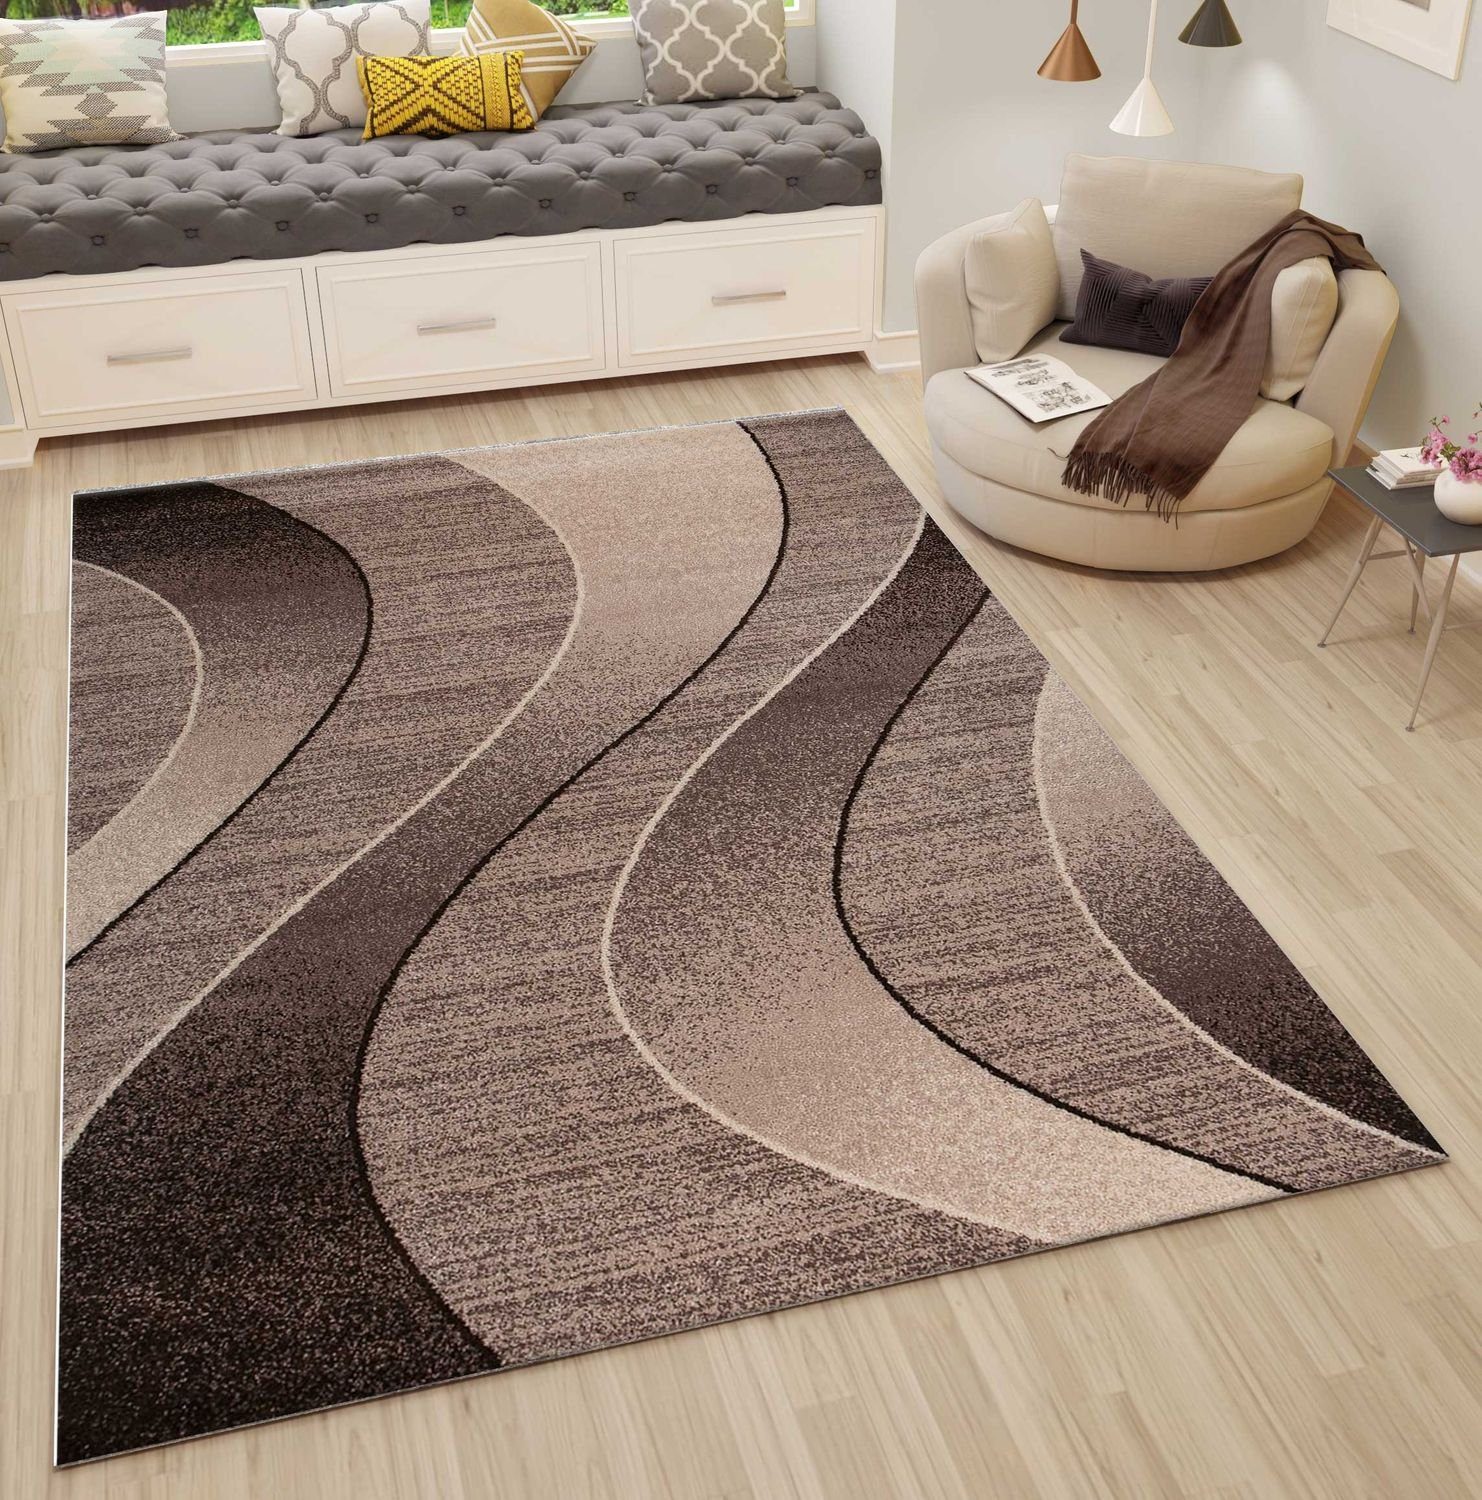 Vimoda Teppich, Vimoda, Rio7325 Teppich Modern Braun Beige Creme  Pflegeleicht Wellen Muster online kaufen | OTTO